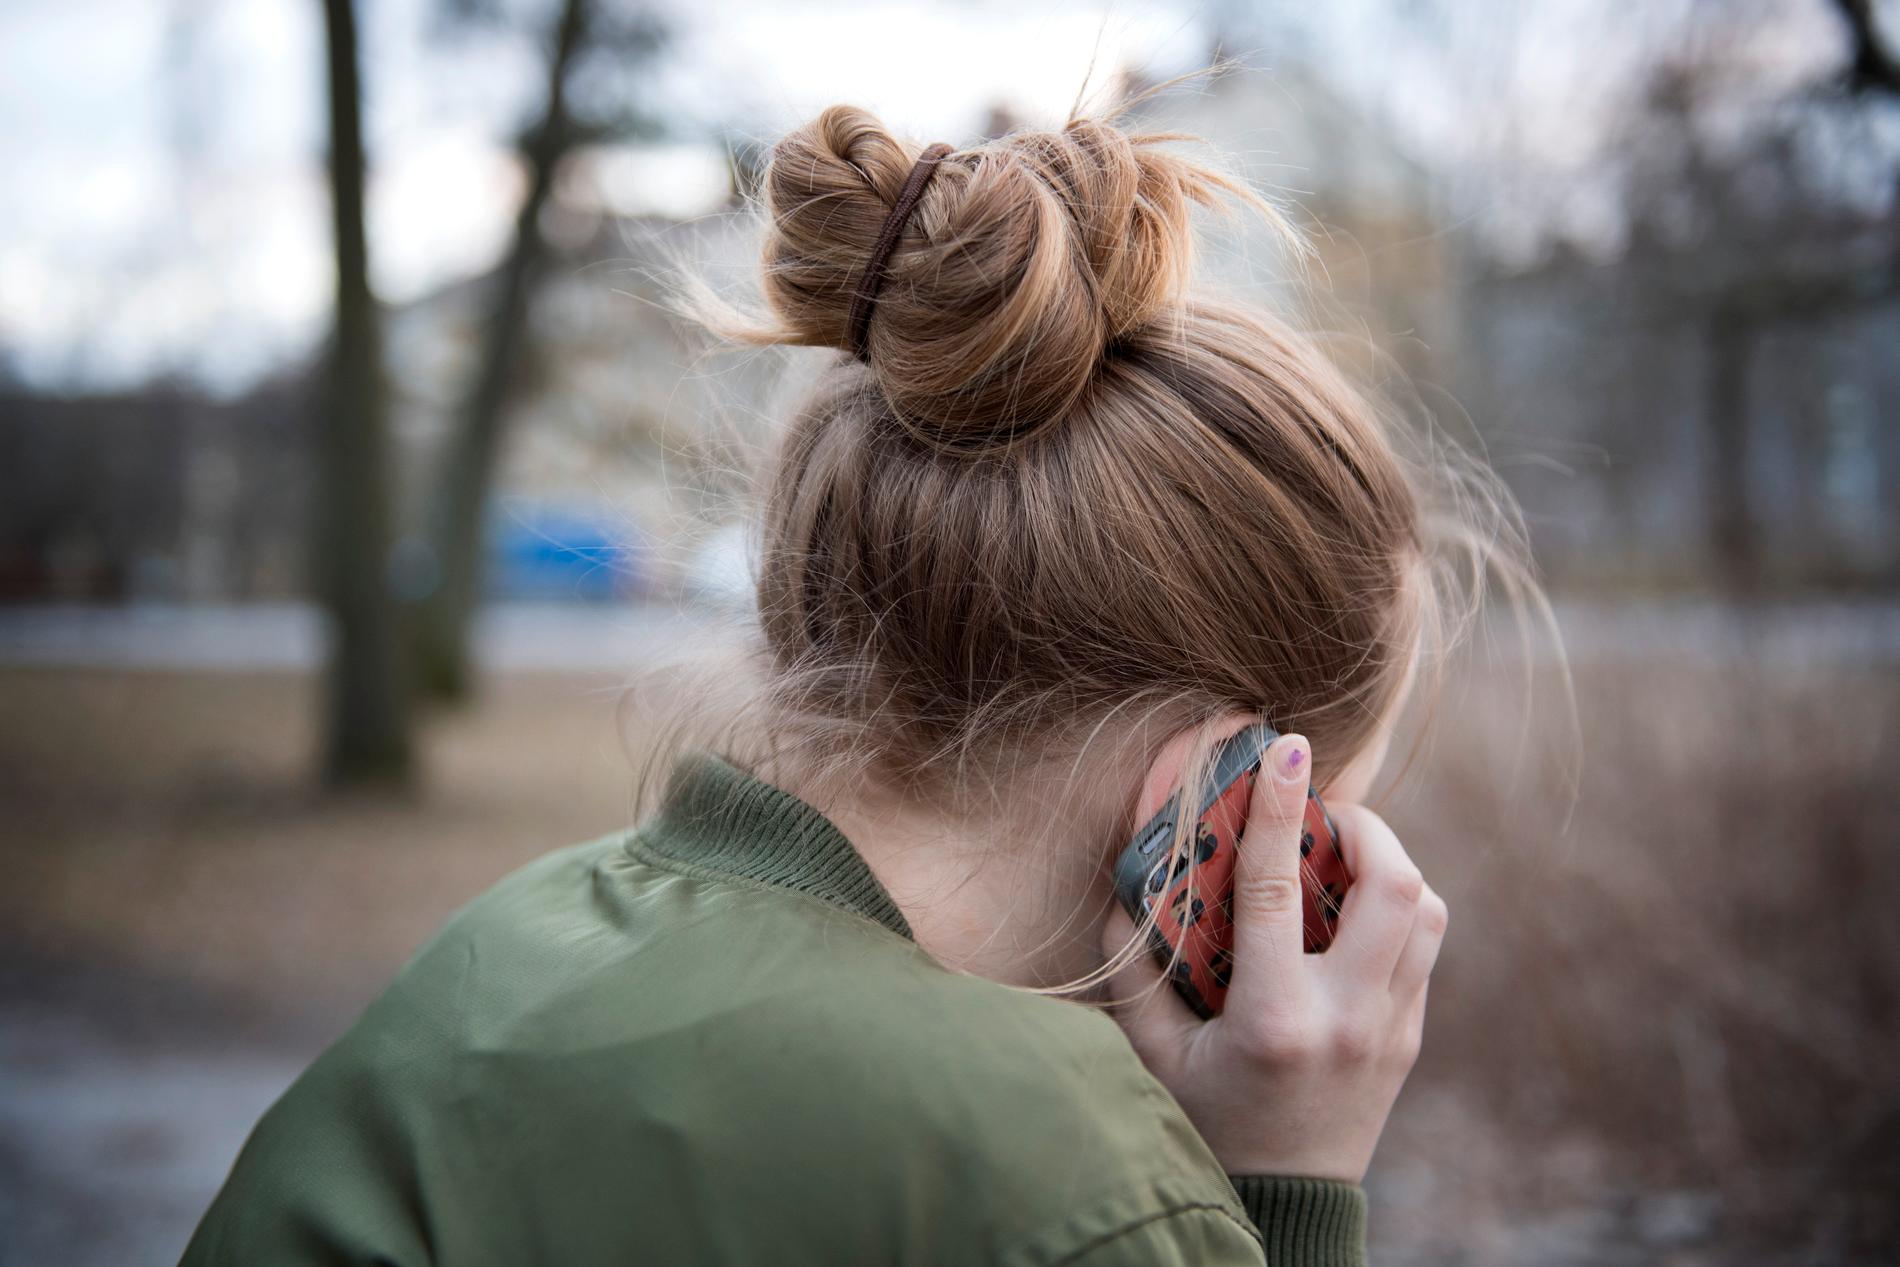 Gammal som ung som är orolig och vill prata med någon kan ringa till Röda Korsets nya stödtelefon. Arkivbild.